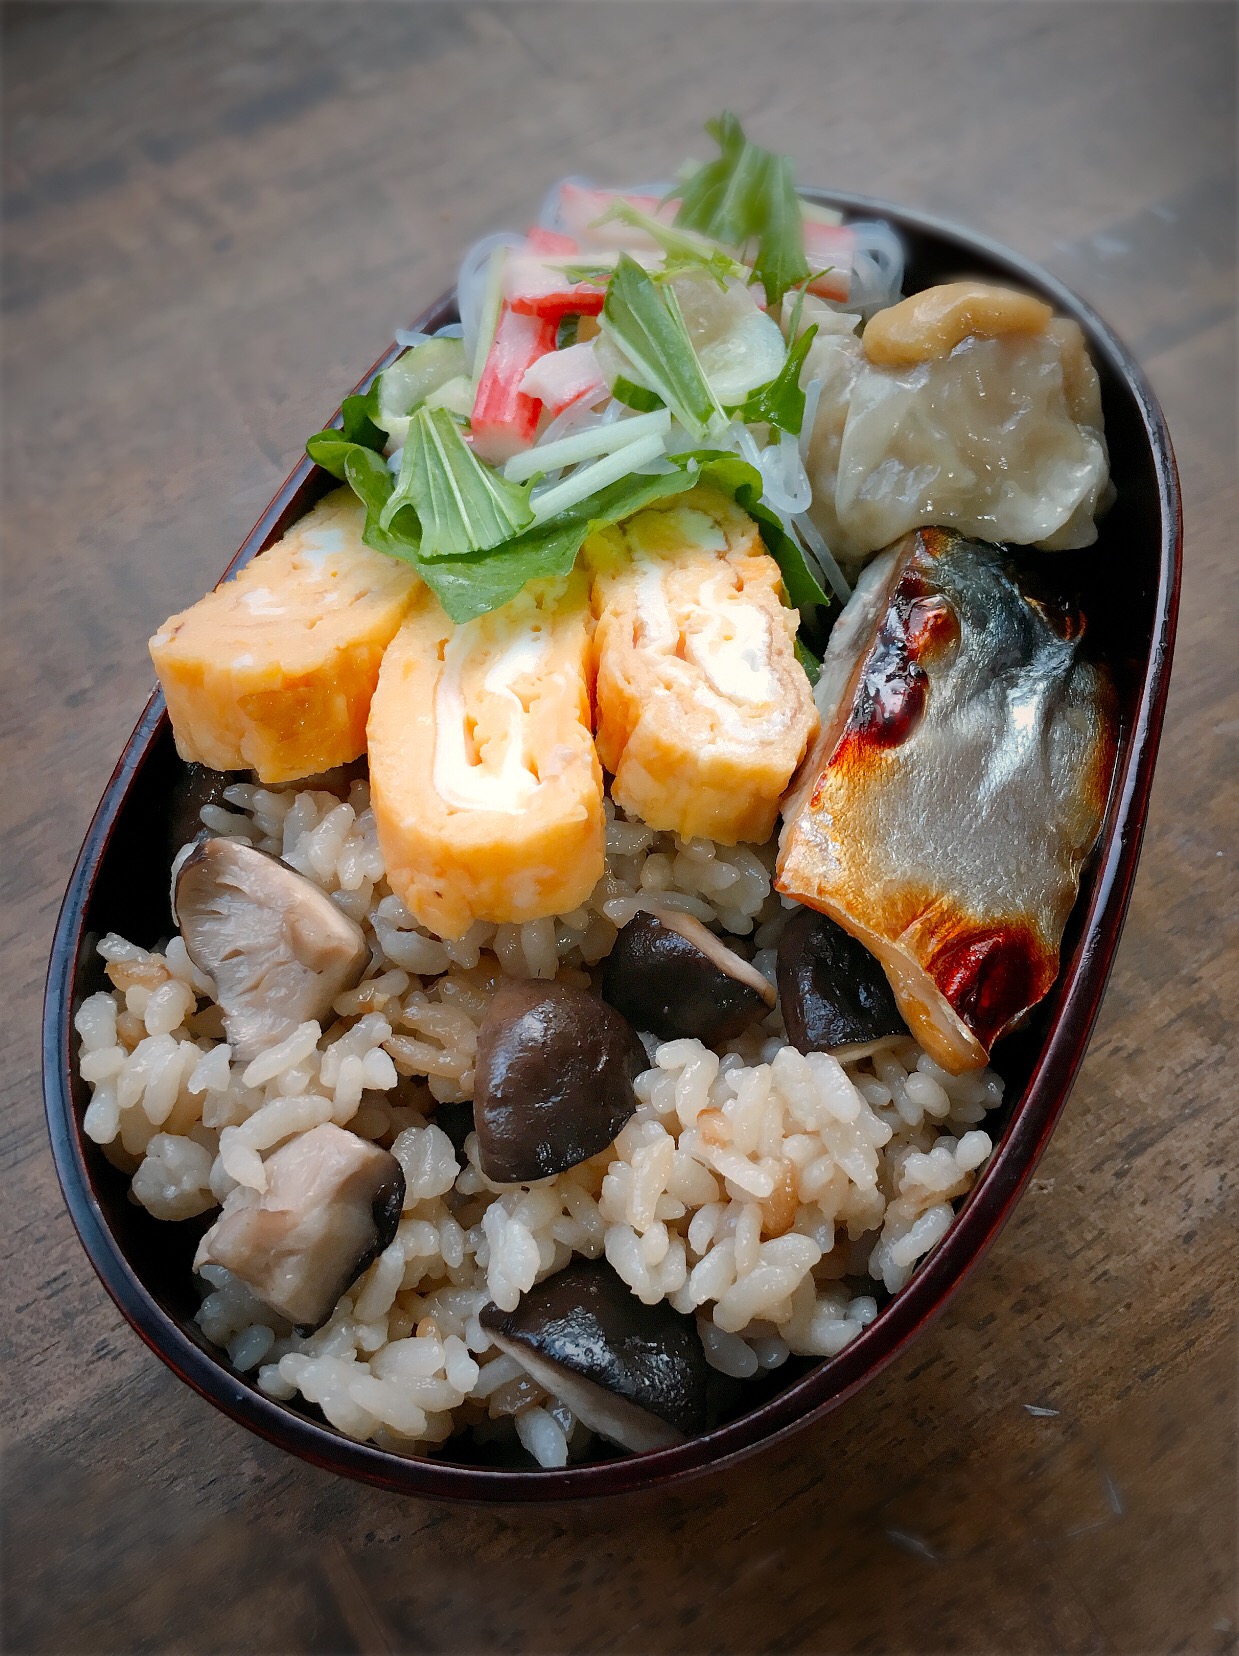 今日のお弁当
・椎茸炊き込みご飯
・だし巻き卵
・真鯖の焼き物
・春雨サラダ
・シュウマイ